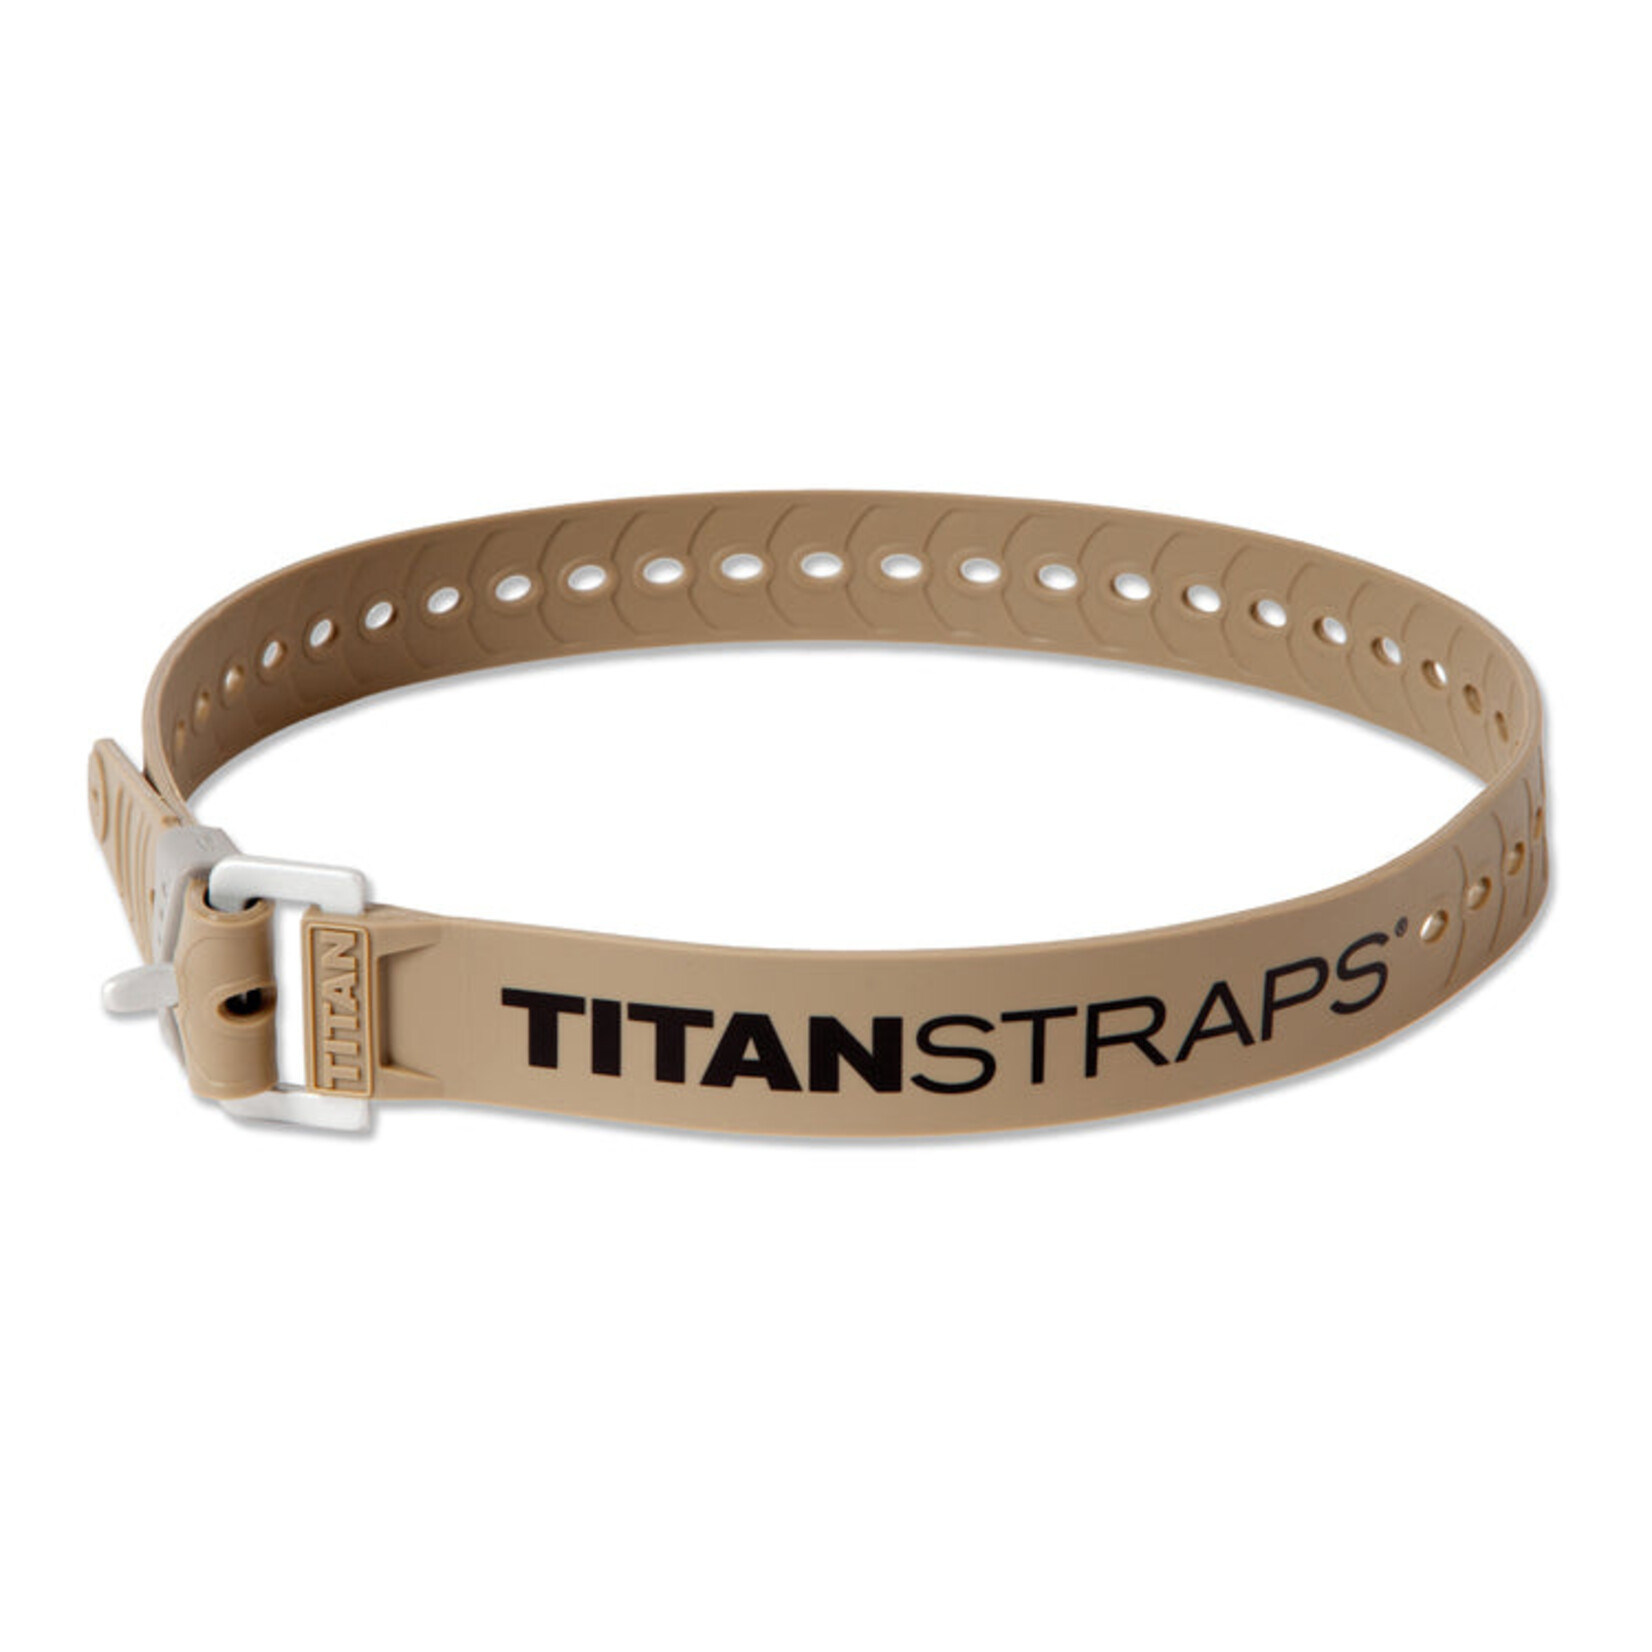 TITANSTRAPS TITANSTRAPS Industrial Strap - 30"